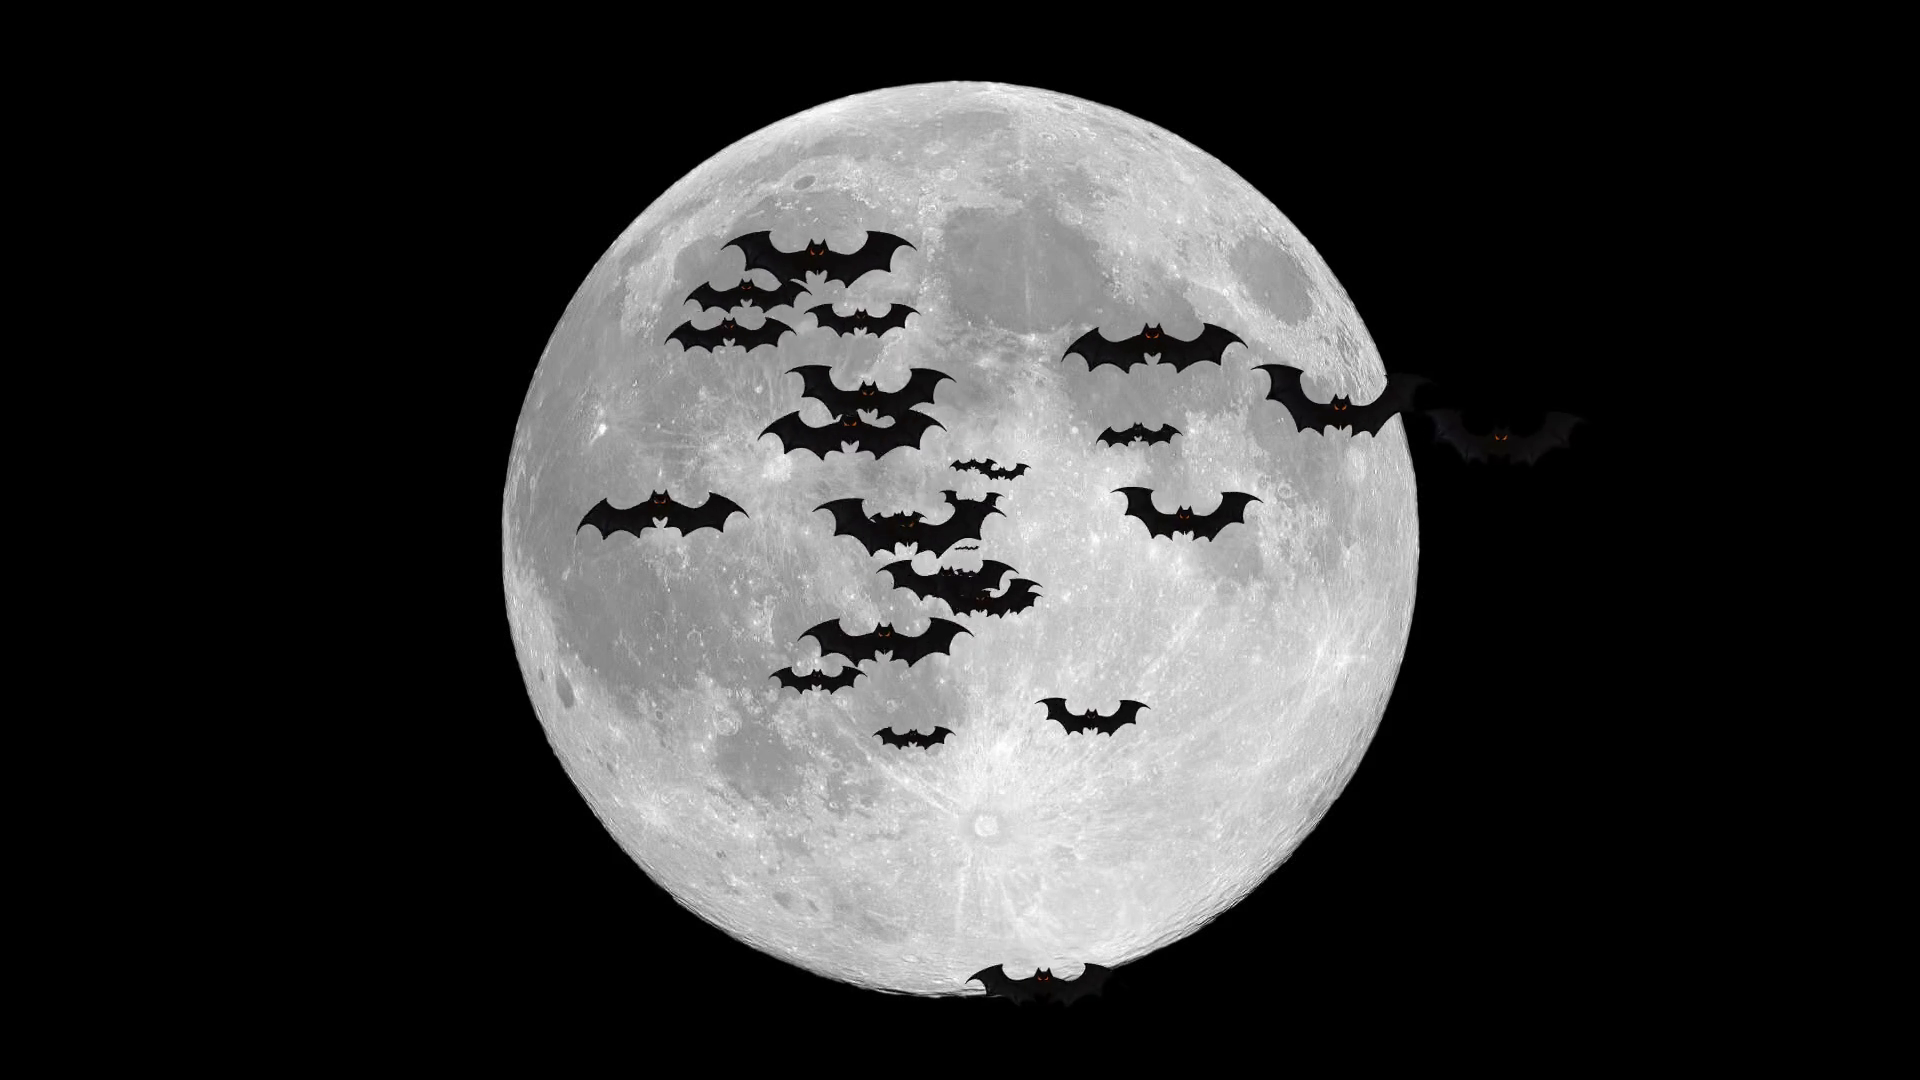 bats-flying-over-full-moon_stgmlttx4g_thumbnail-full02